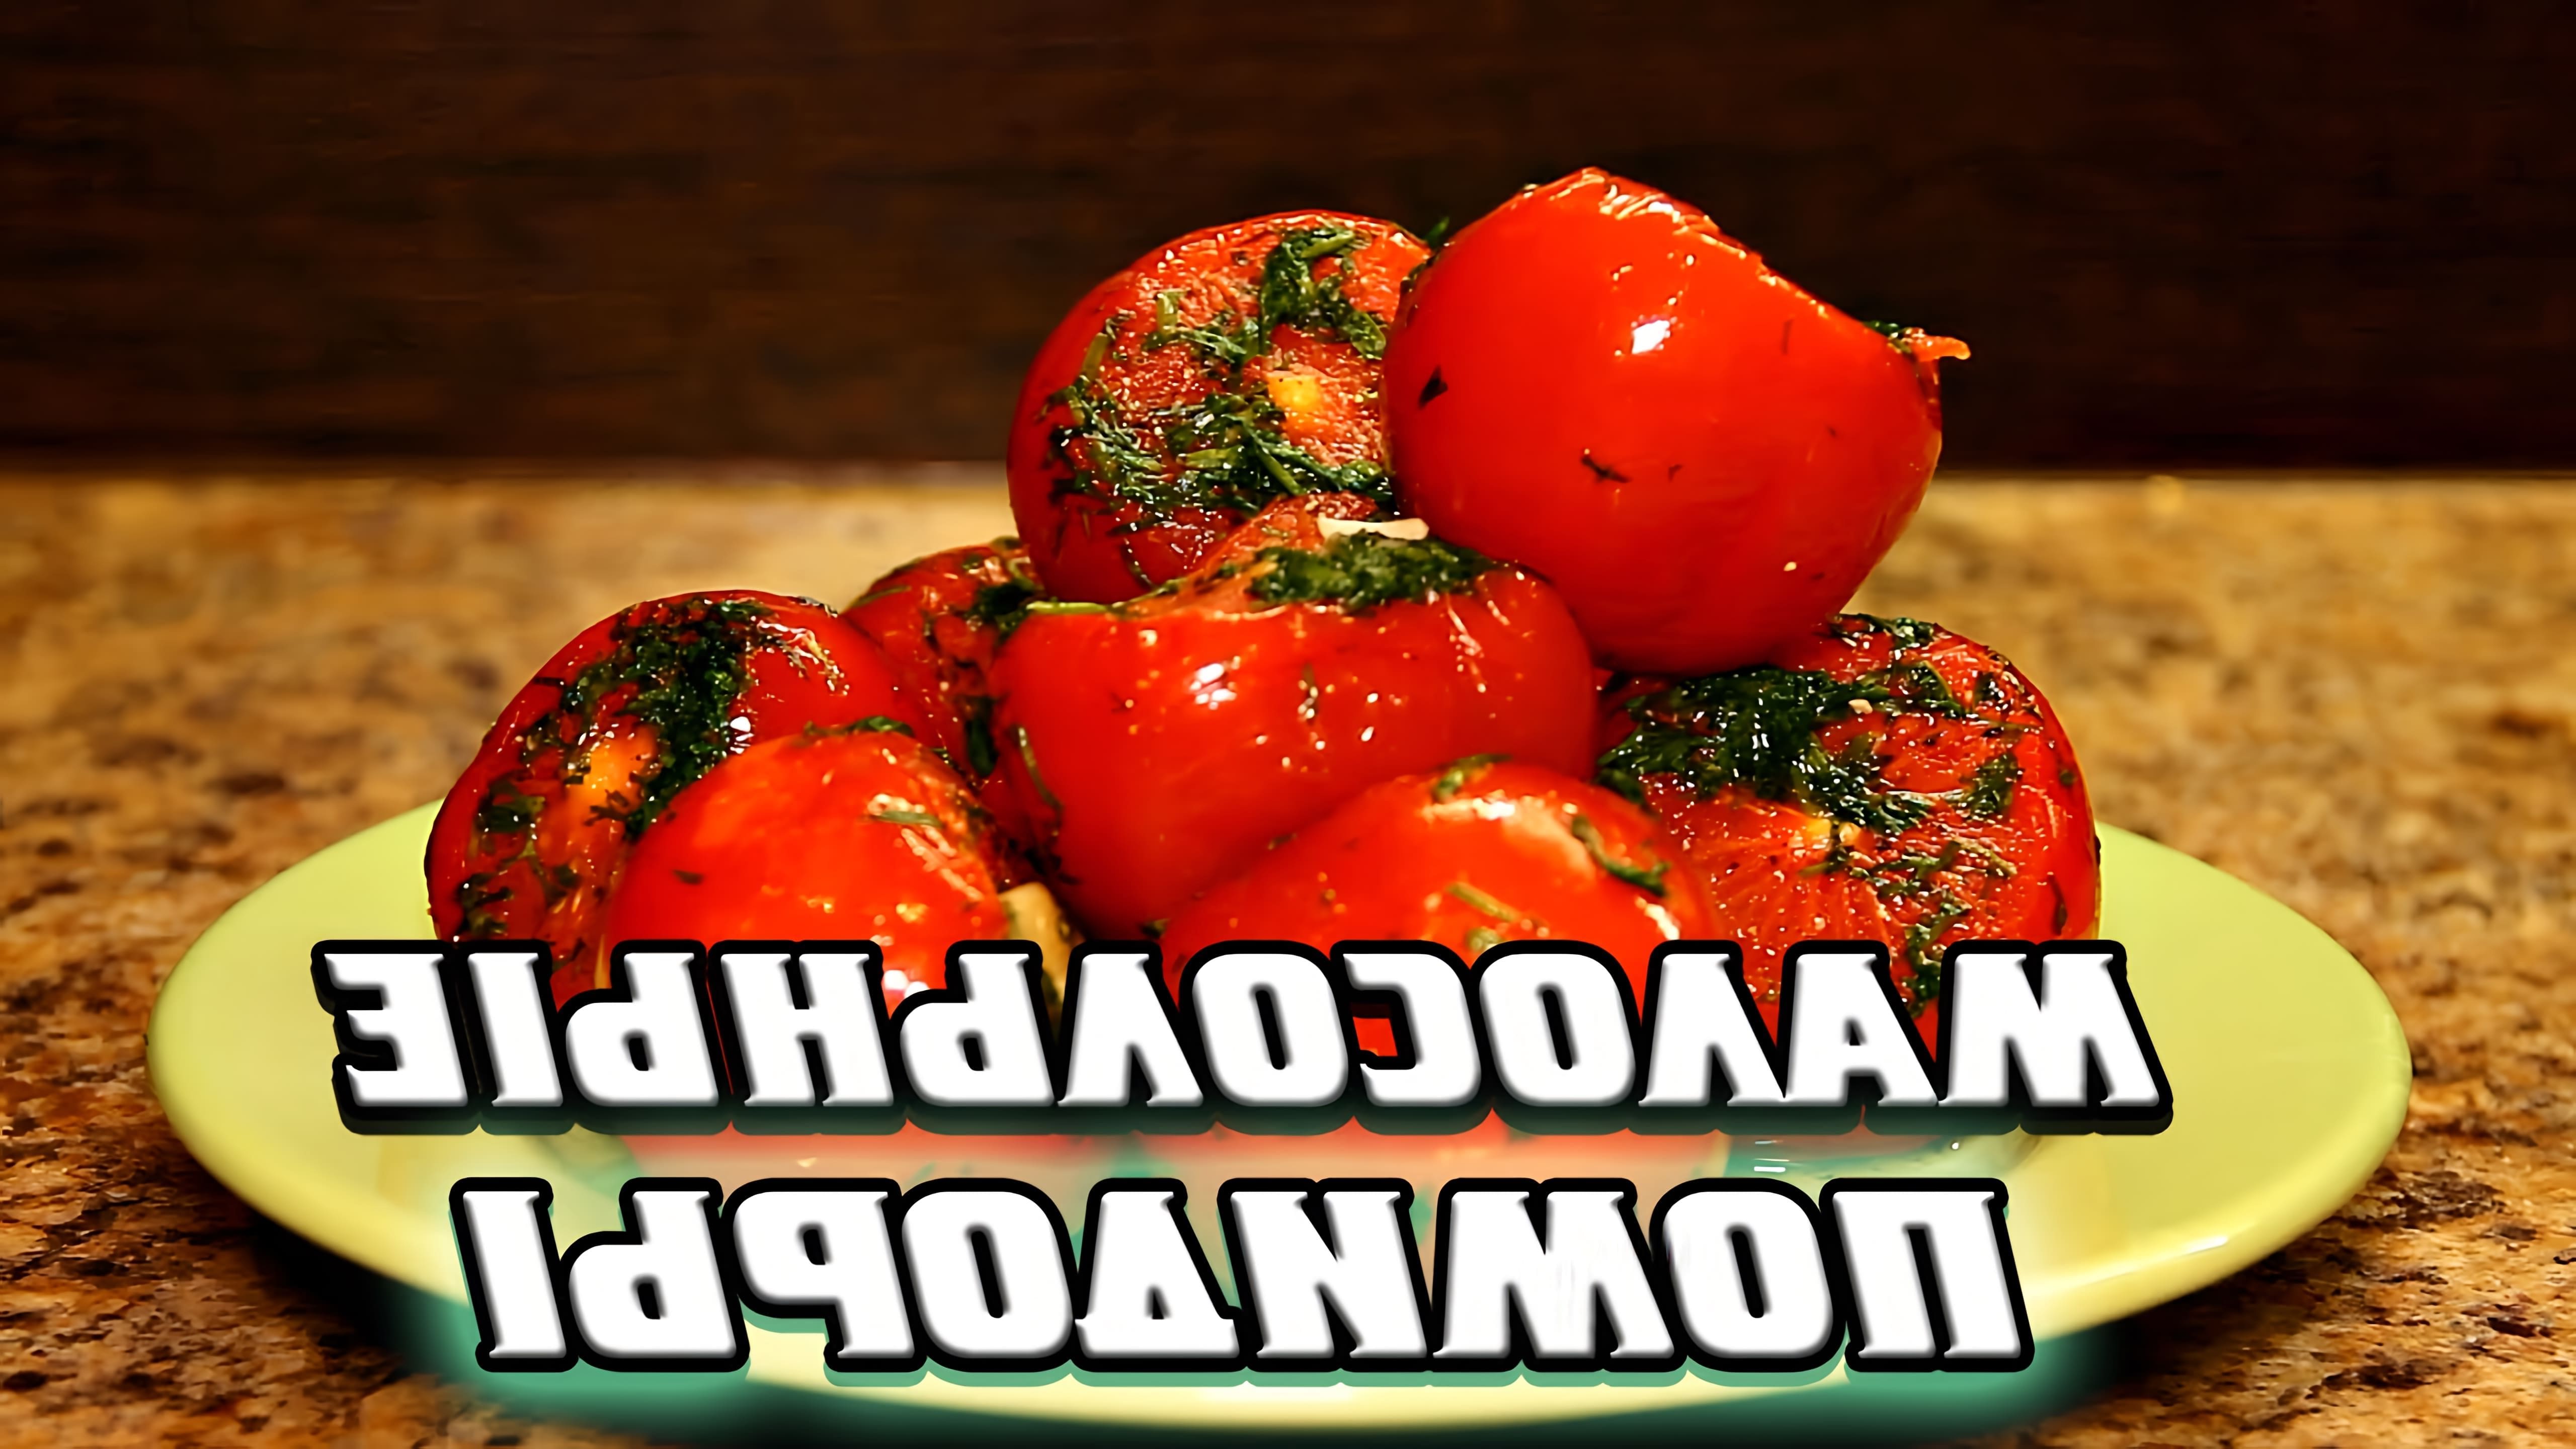 Сегодня ты узнаешь как приготовить малосольные помидоры вкусно и быстро! На подготовку уйдут считанные минуты, ... 